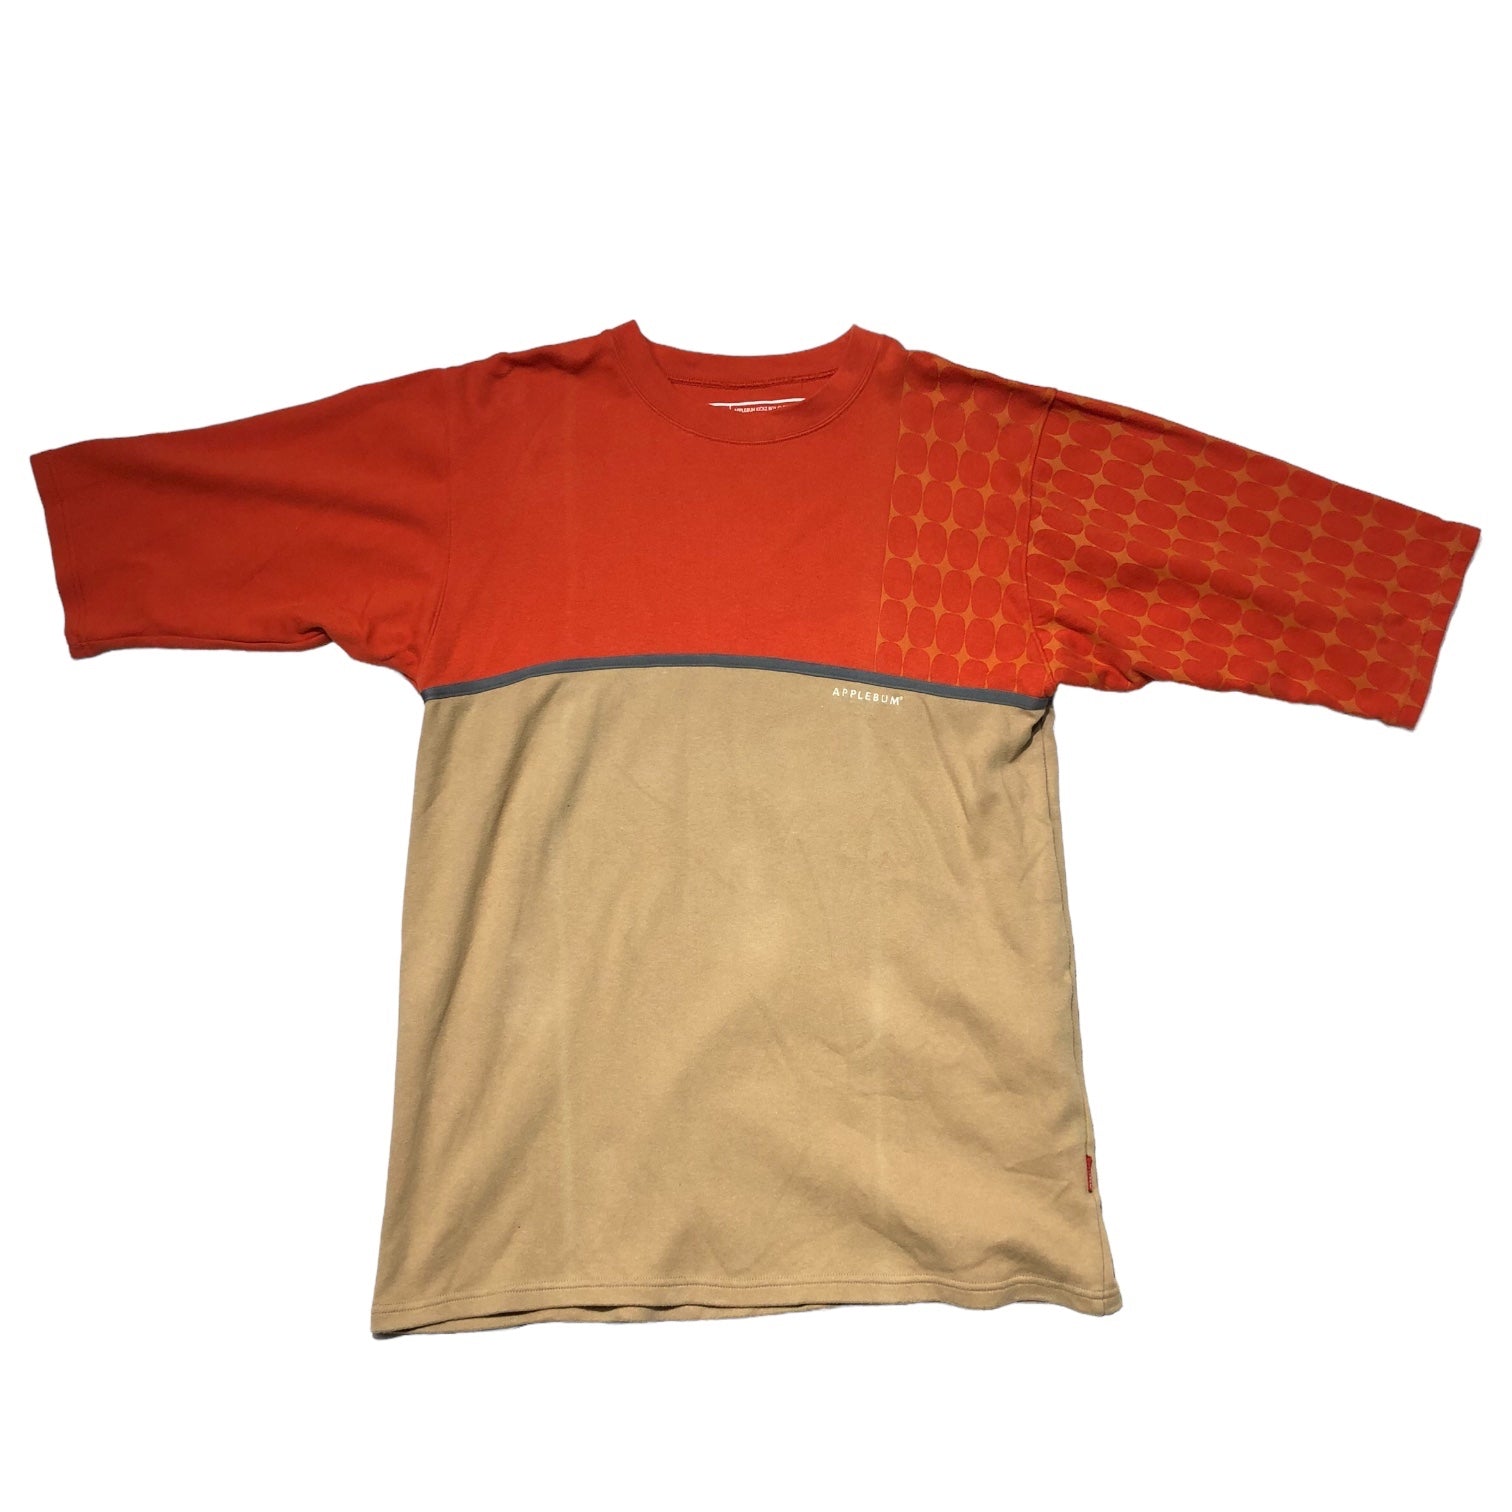 APPLEBUM(アップルバム) KICKZ BOX CLOTHING シューズ ボックス モチーフ 半袖 Tシャツ 0333256-104 L ベージュ×オレンジ